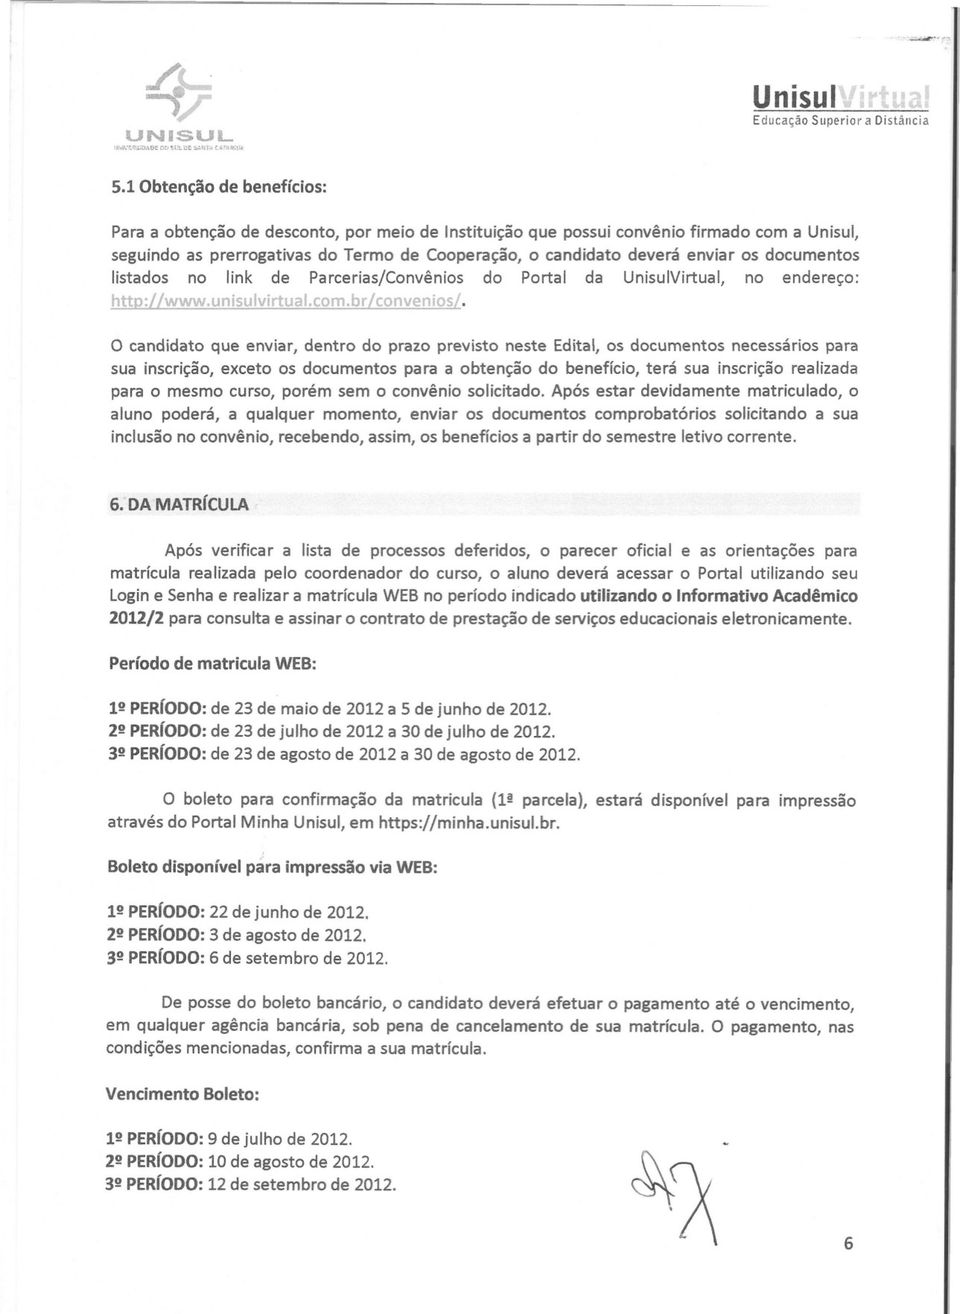 documentos listados no link de Parcerias/Convênios do Portal da UnisulVirtual, no endereço: htto:/ /www.unisulvirtual.com.br/convenios/.